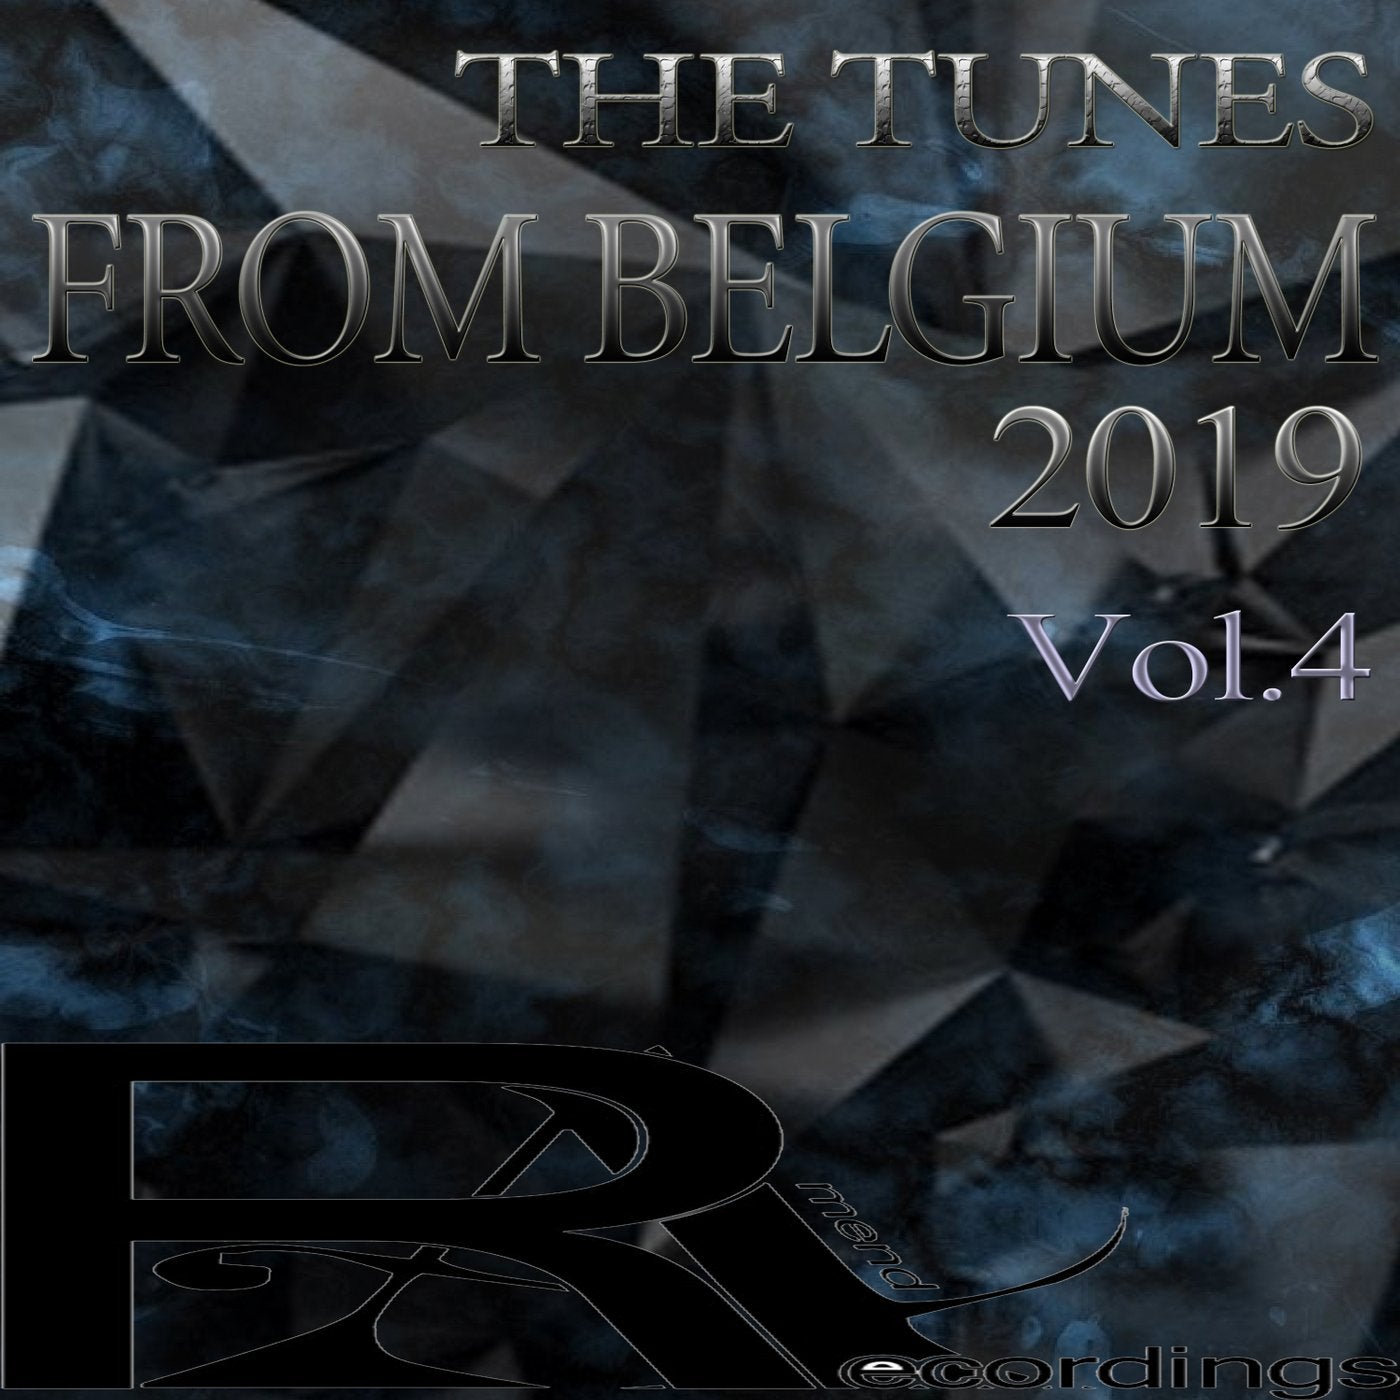 THE TUNES FROM BELGIUM  2019, Vol.4